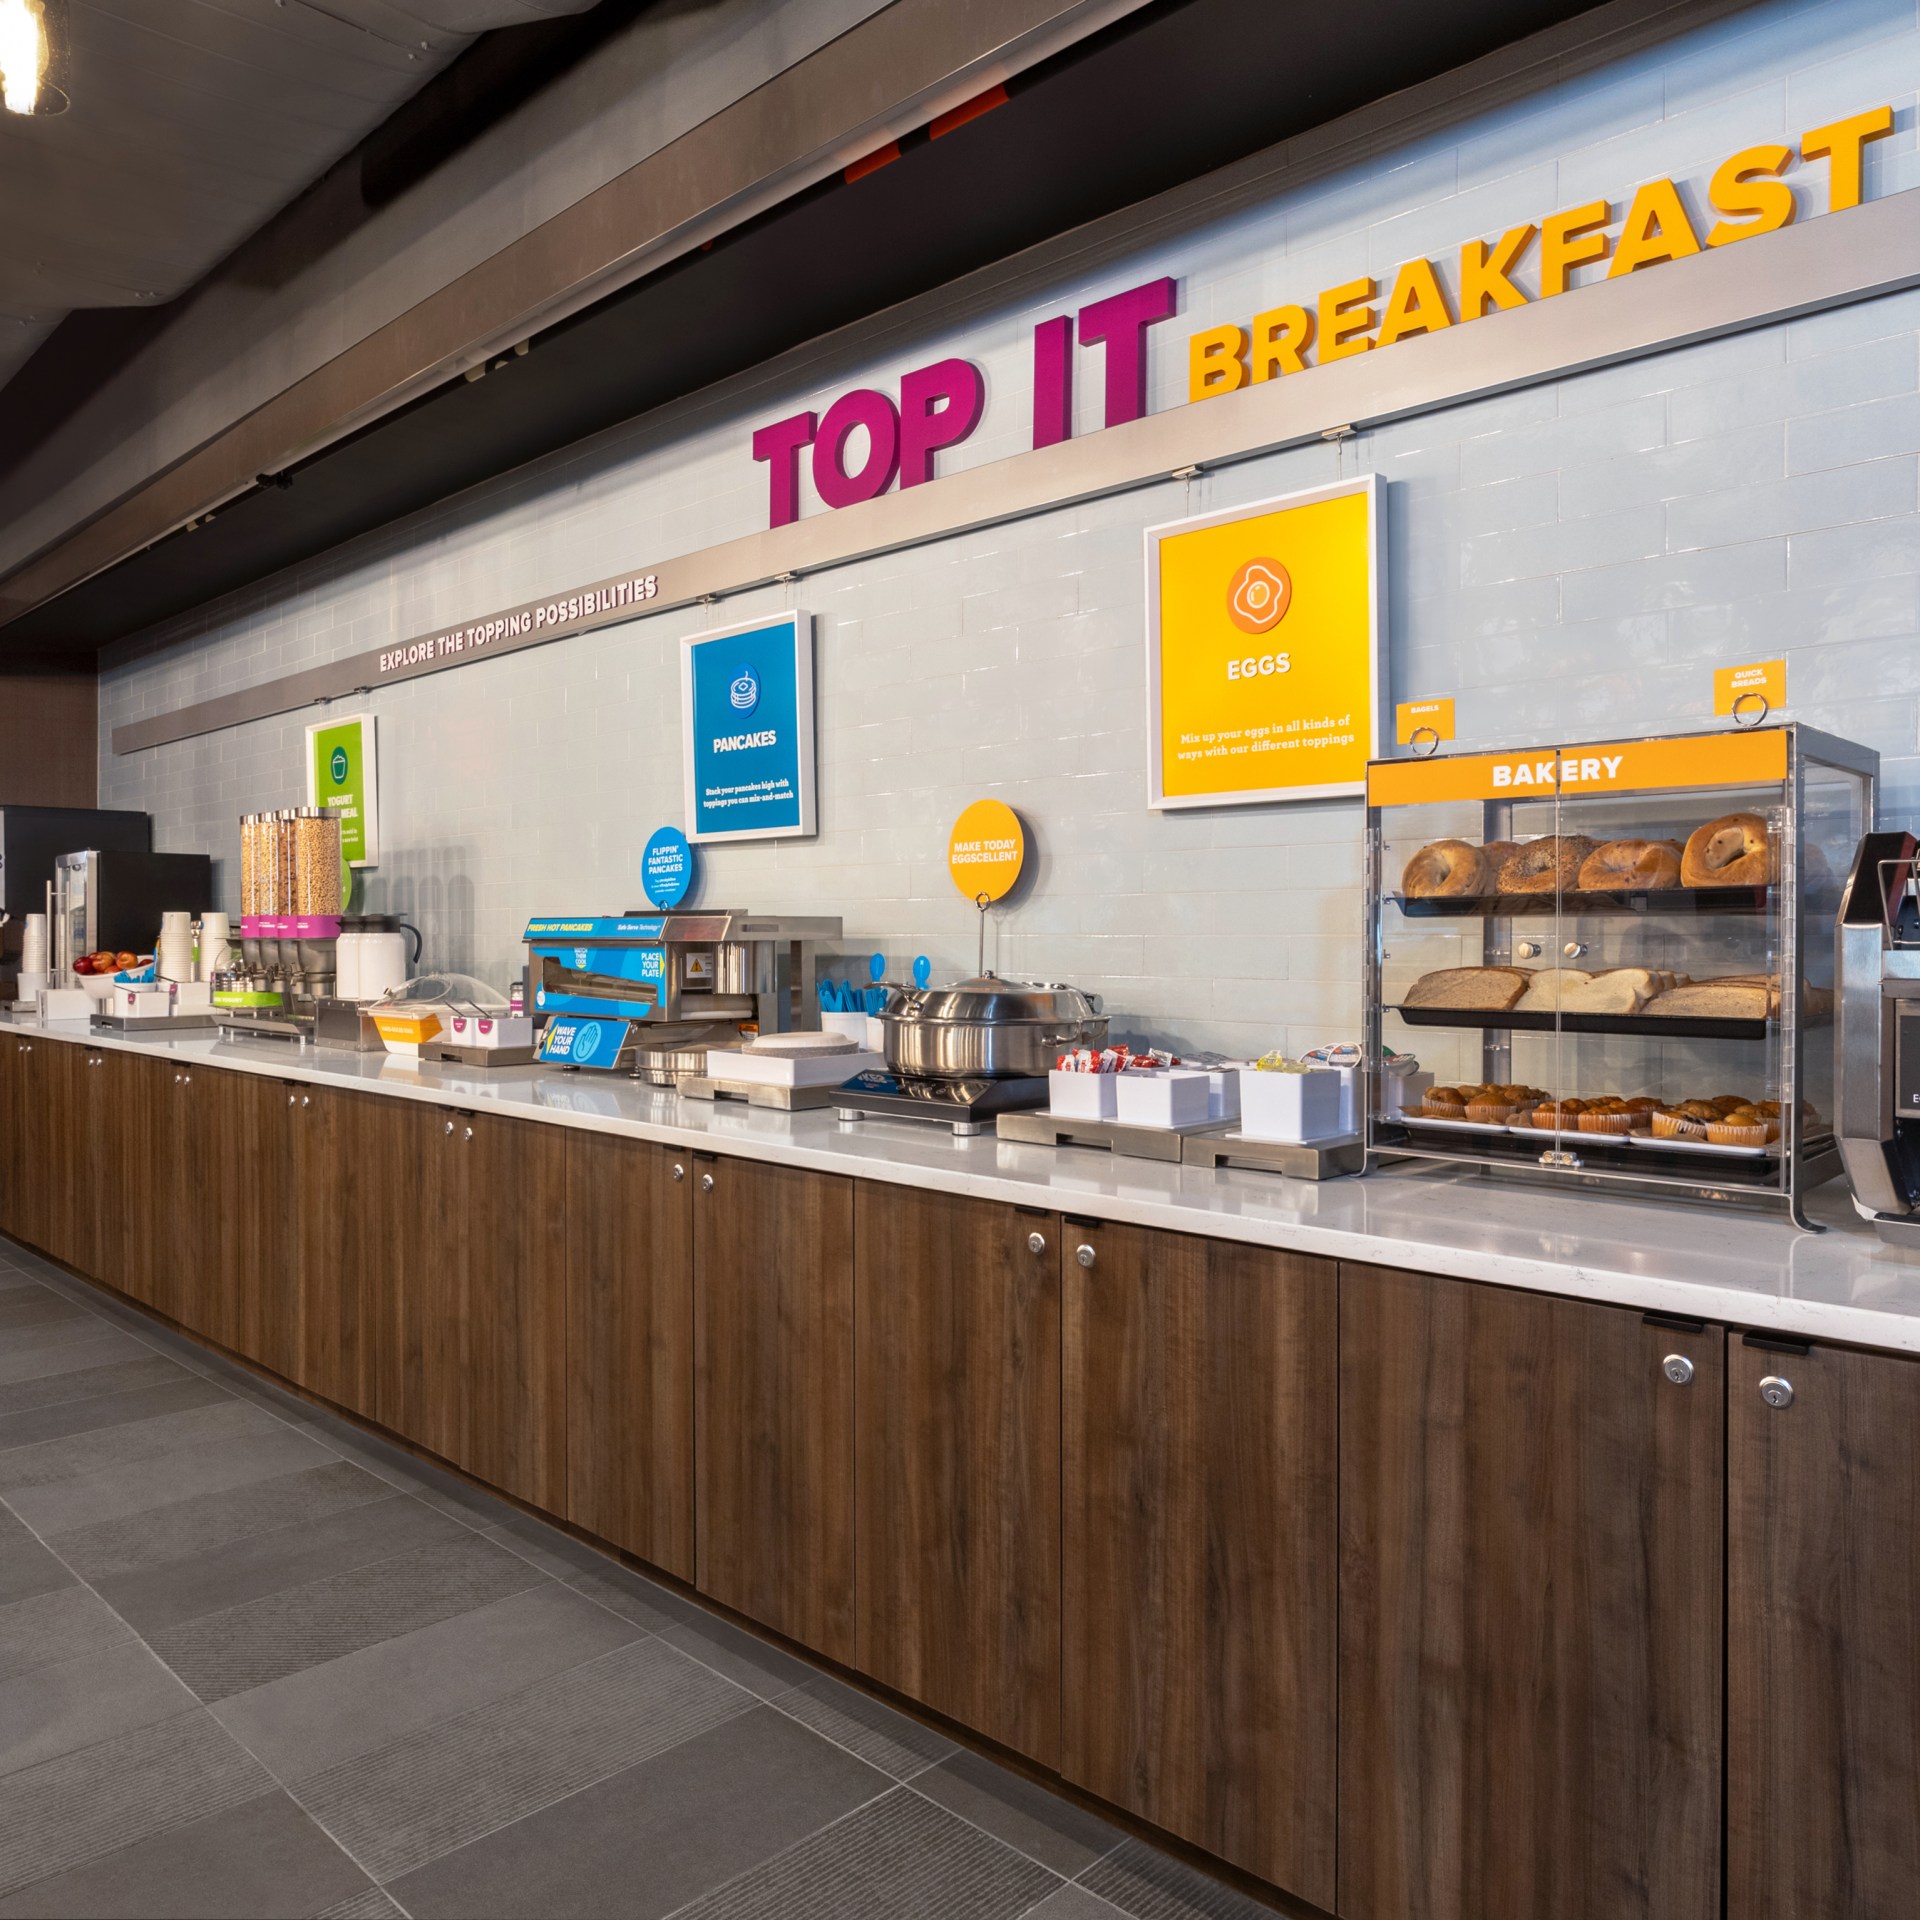 Tru by Hilton Brooklyn - Top It Breakfast Bar